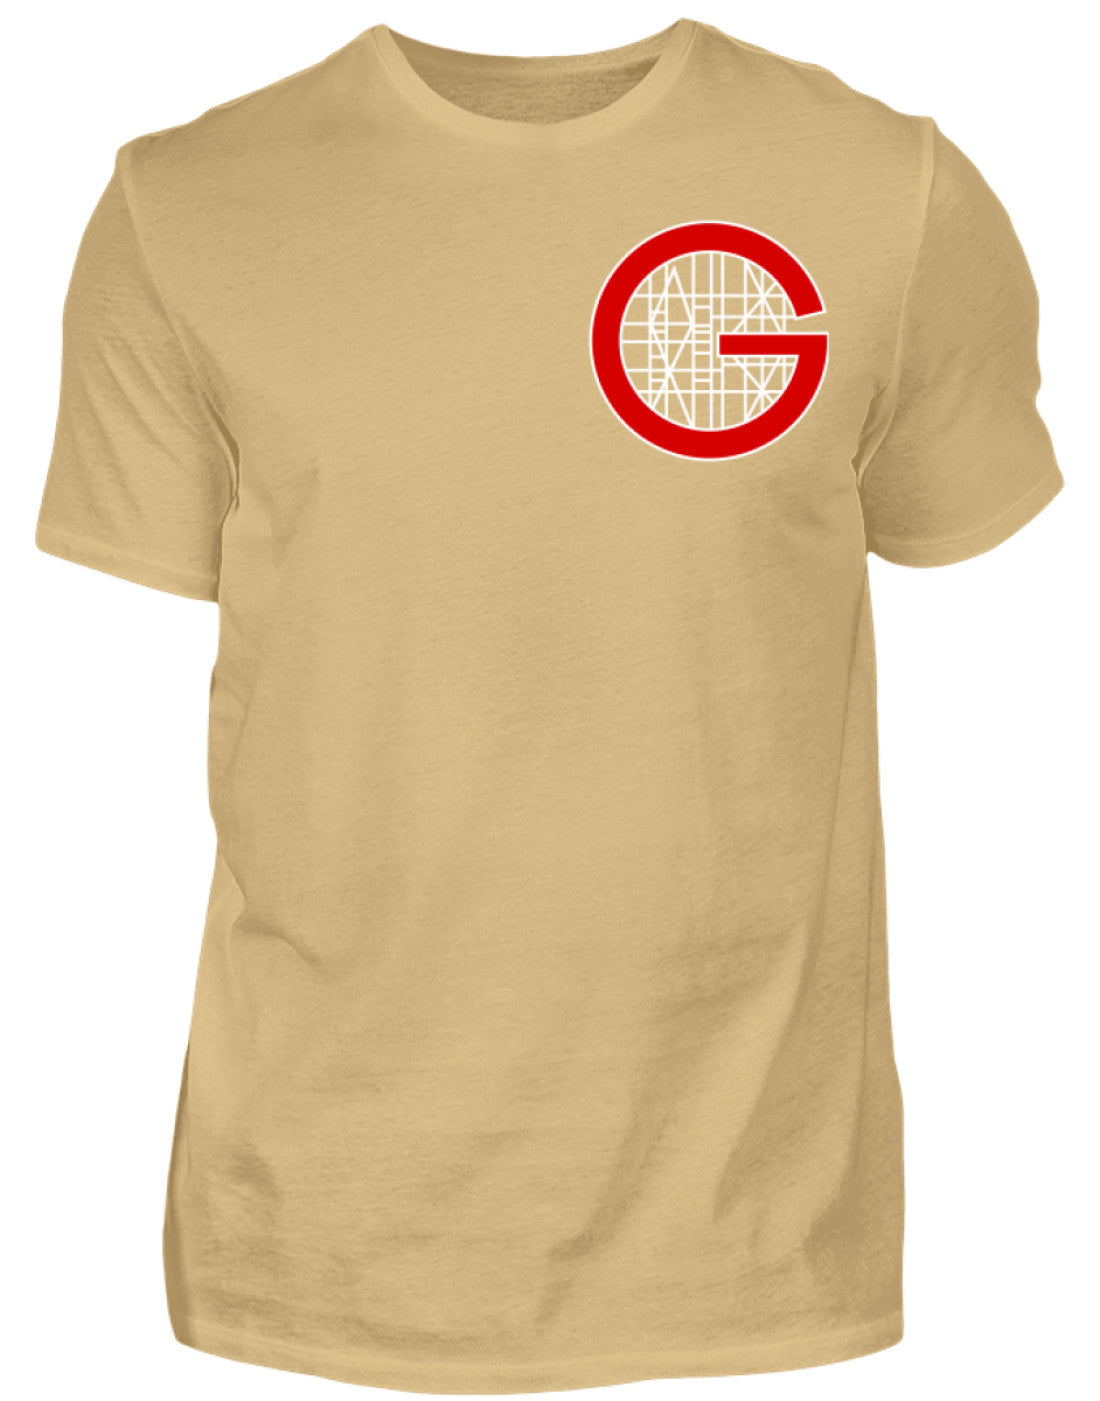 Gerüstbauer T-Shirt / Handwerk mit Tradition €24.95 Gerüstbauer - Shop >>